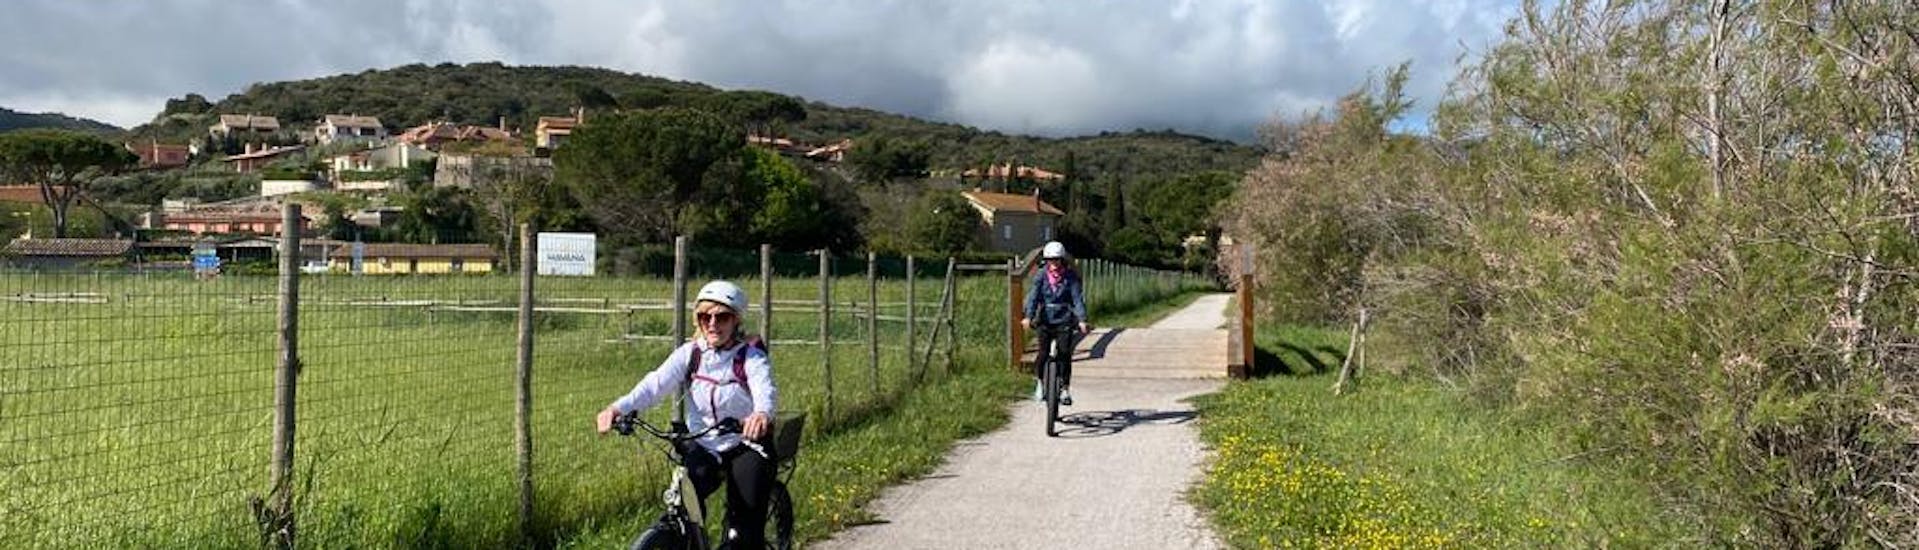 Balade en vélo électrique dans la Maremme toscane.